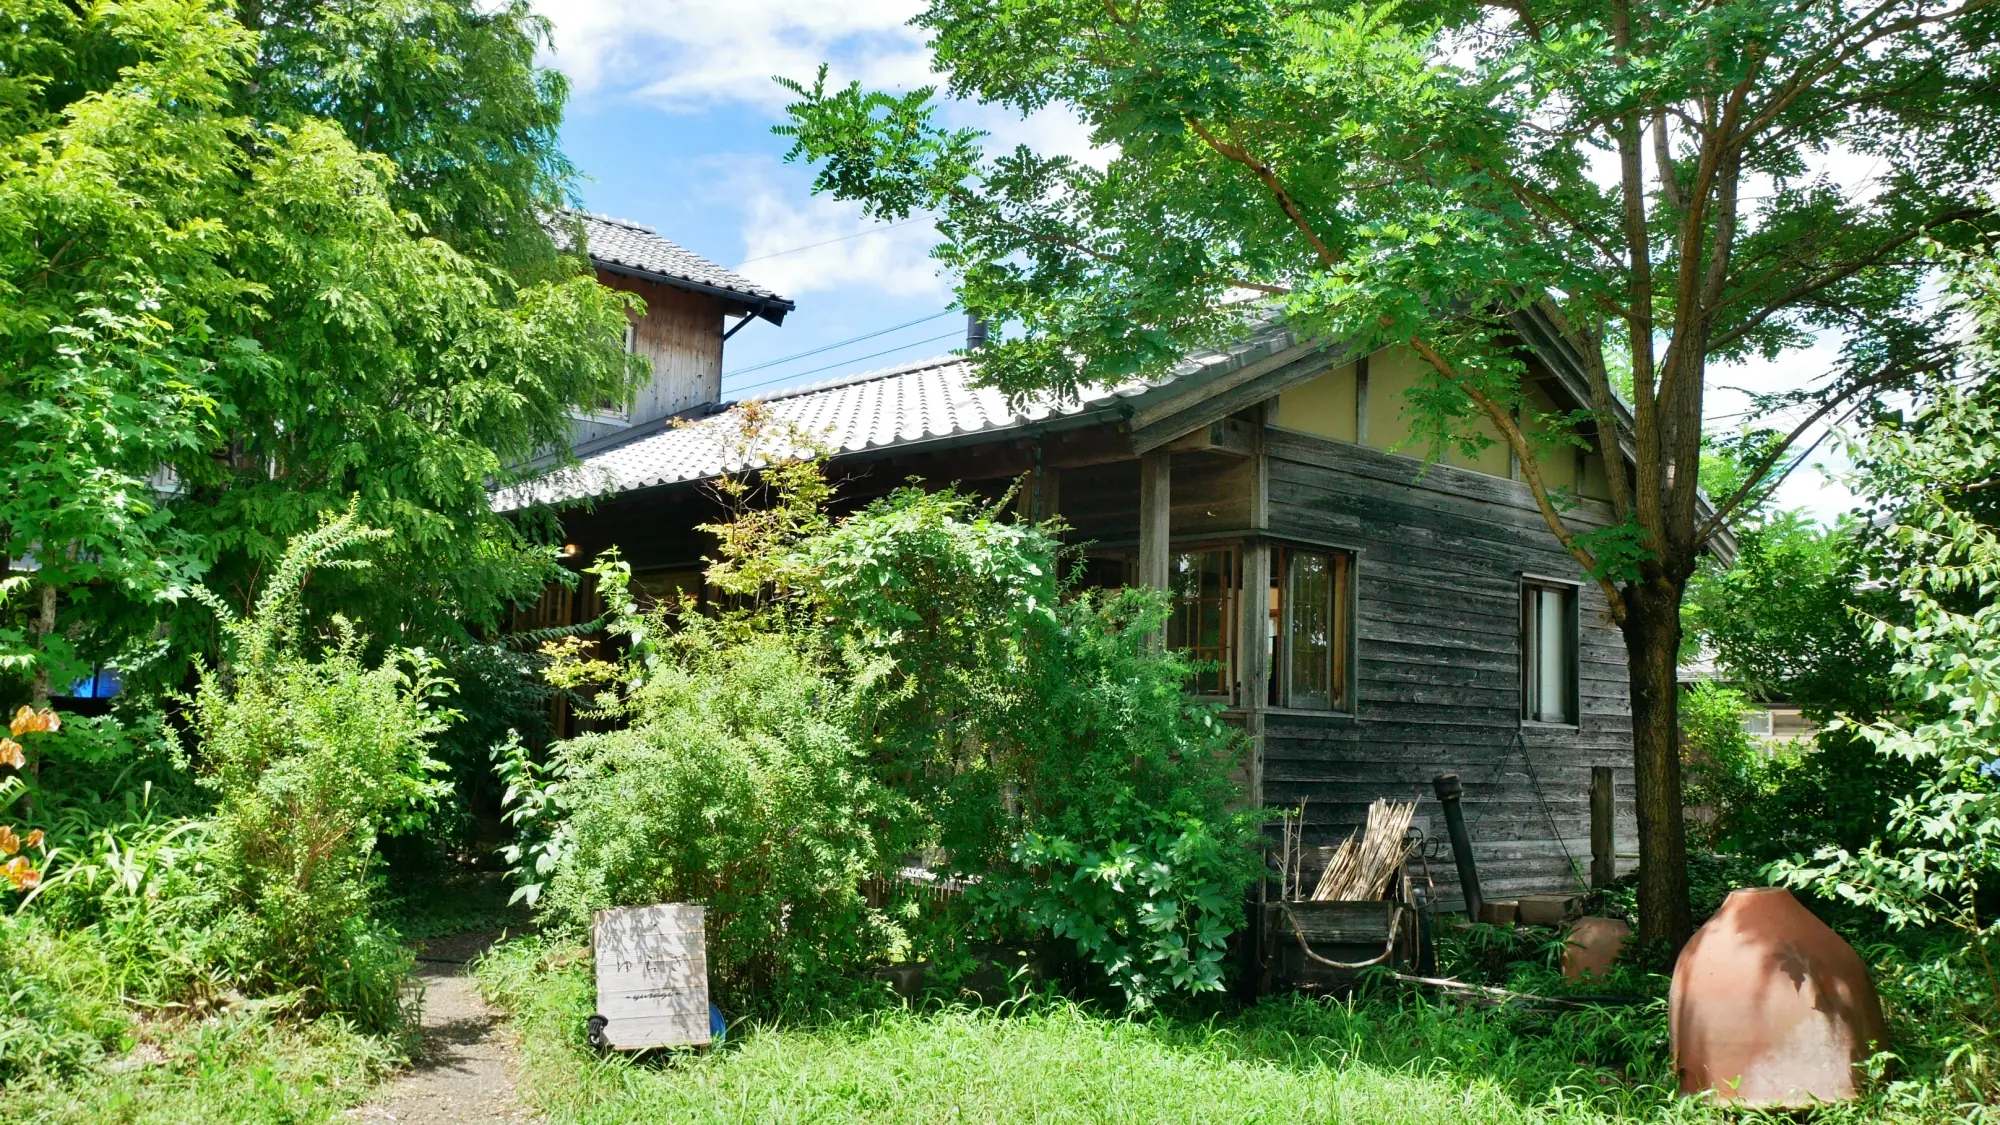 Yuragi là một quán cà phê hữu cơ ở thị trấn Taketoyo, nơi bạn có thể hòa mình vào thiên nhiên. Một khoảng thời gian trong không gian hoài cổ và thoải mái